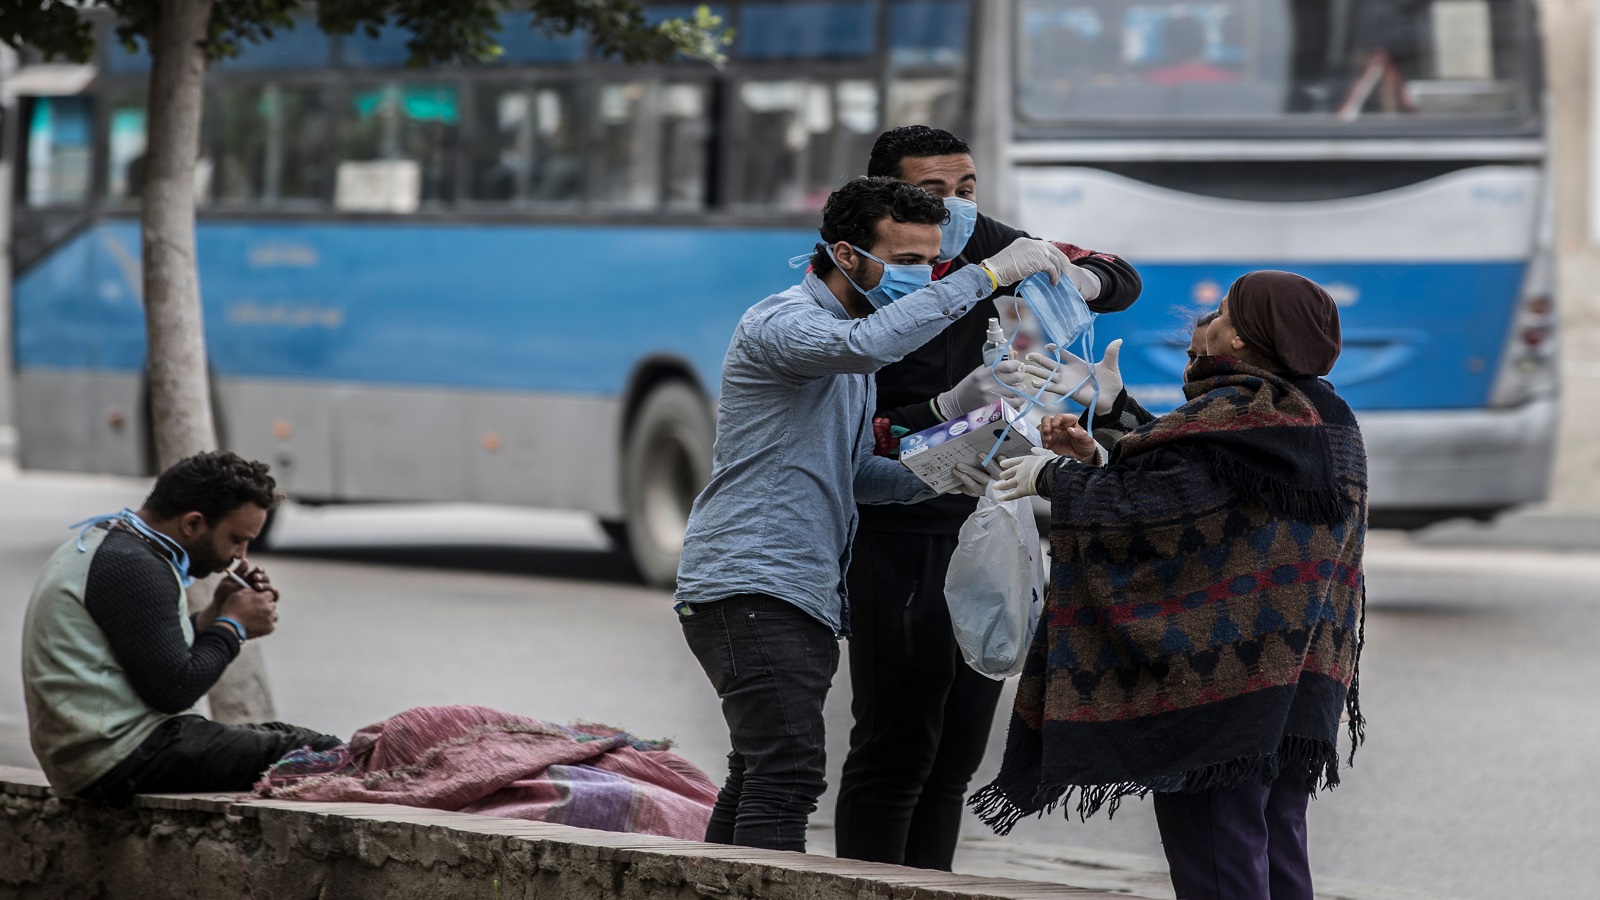 مصر تخفي أرقام كورونا وتتجه لحظر تجول:الوباء يحاصر الحكومة